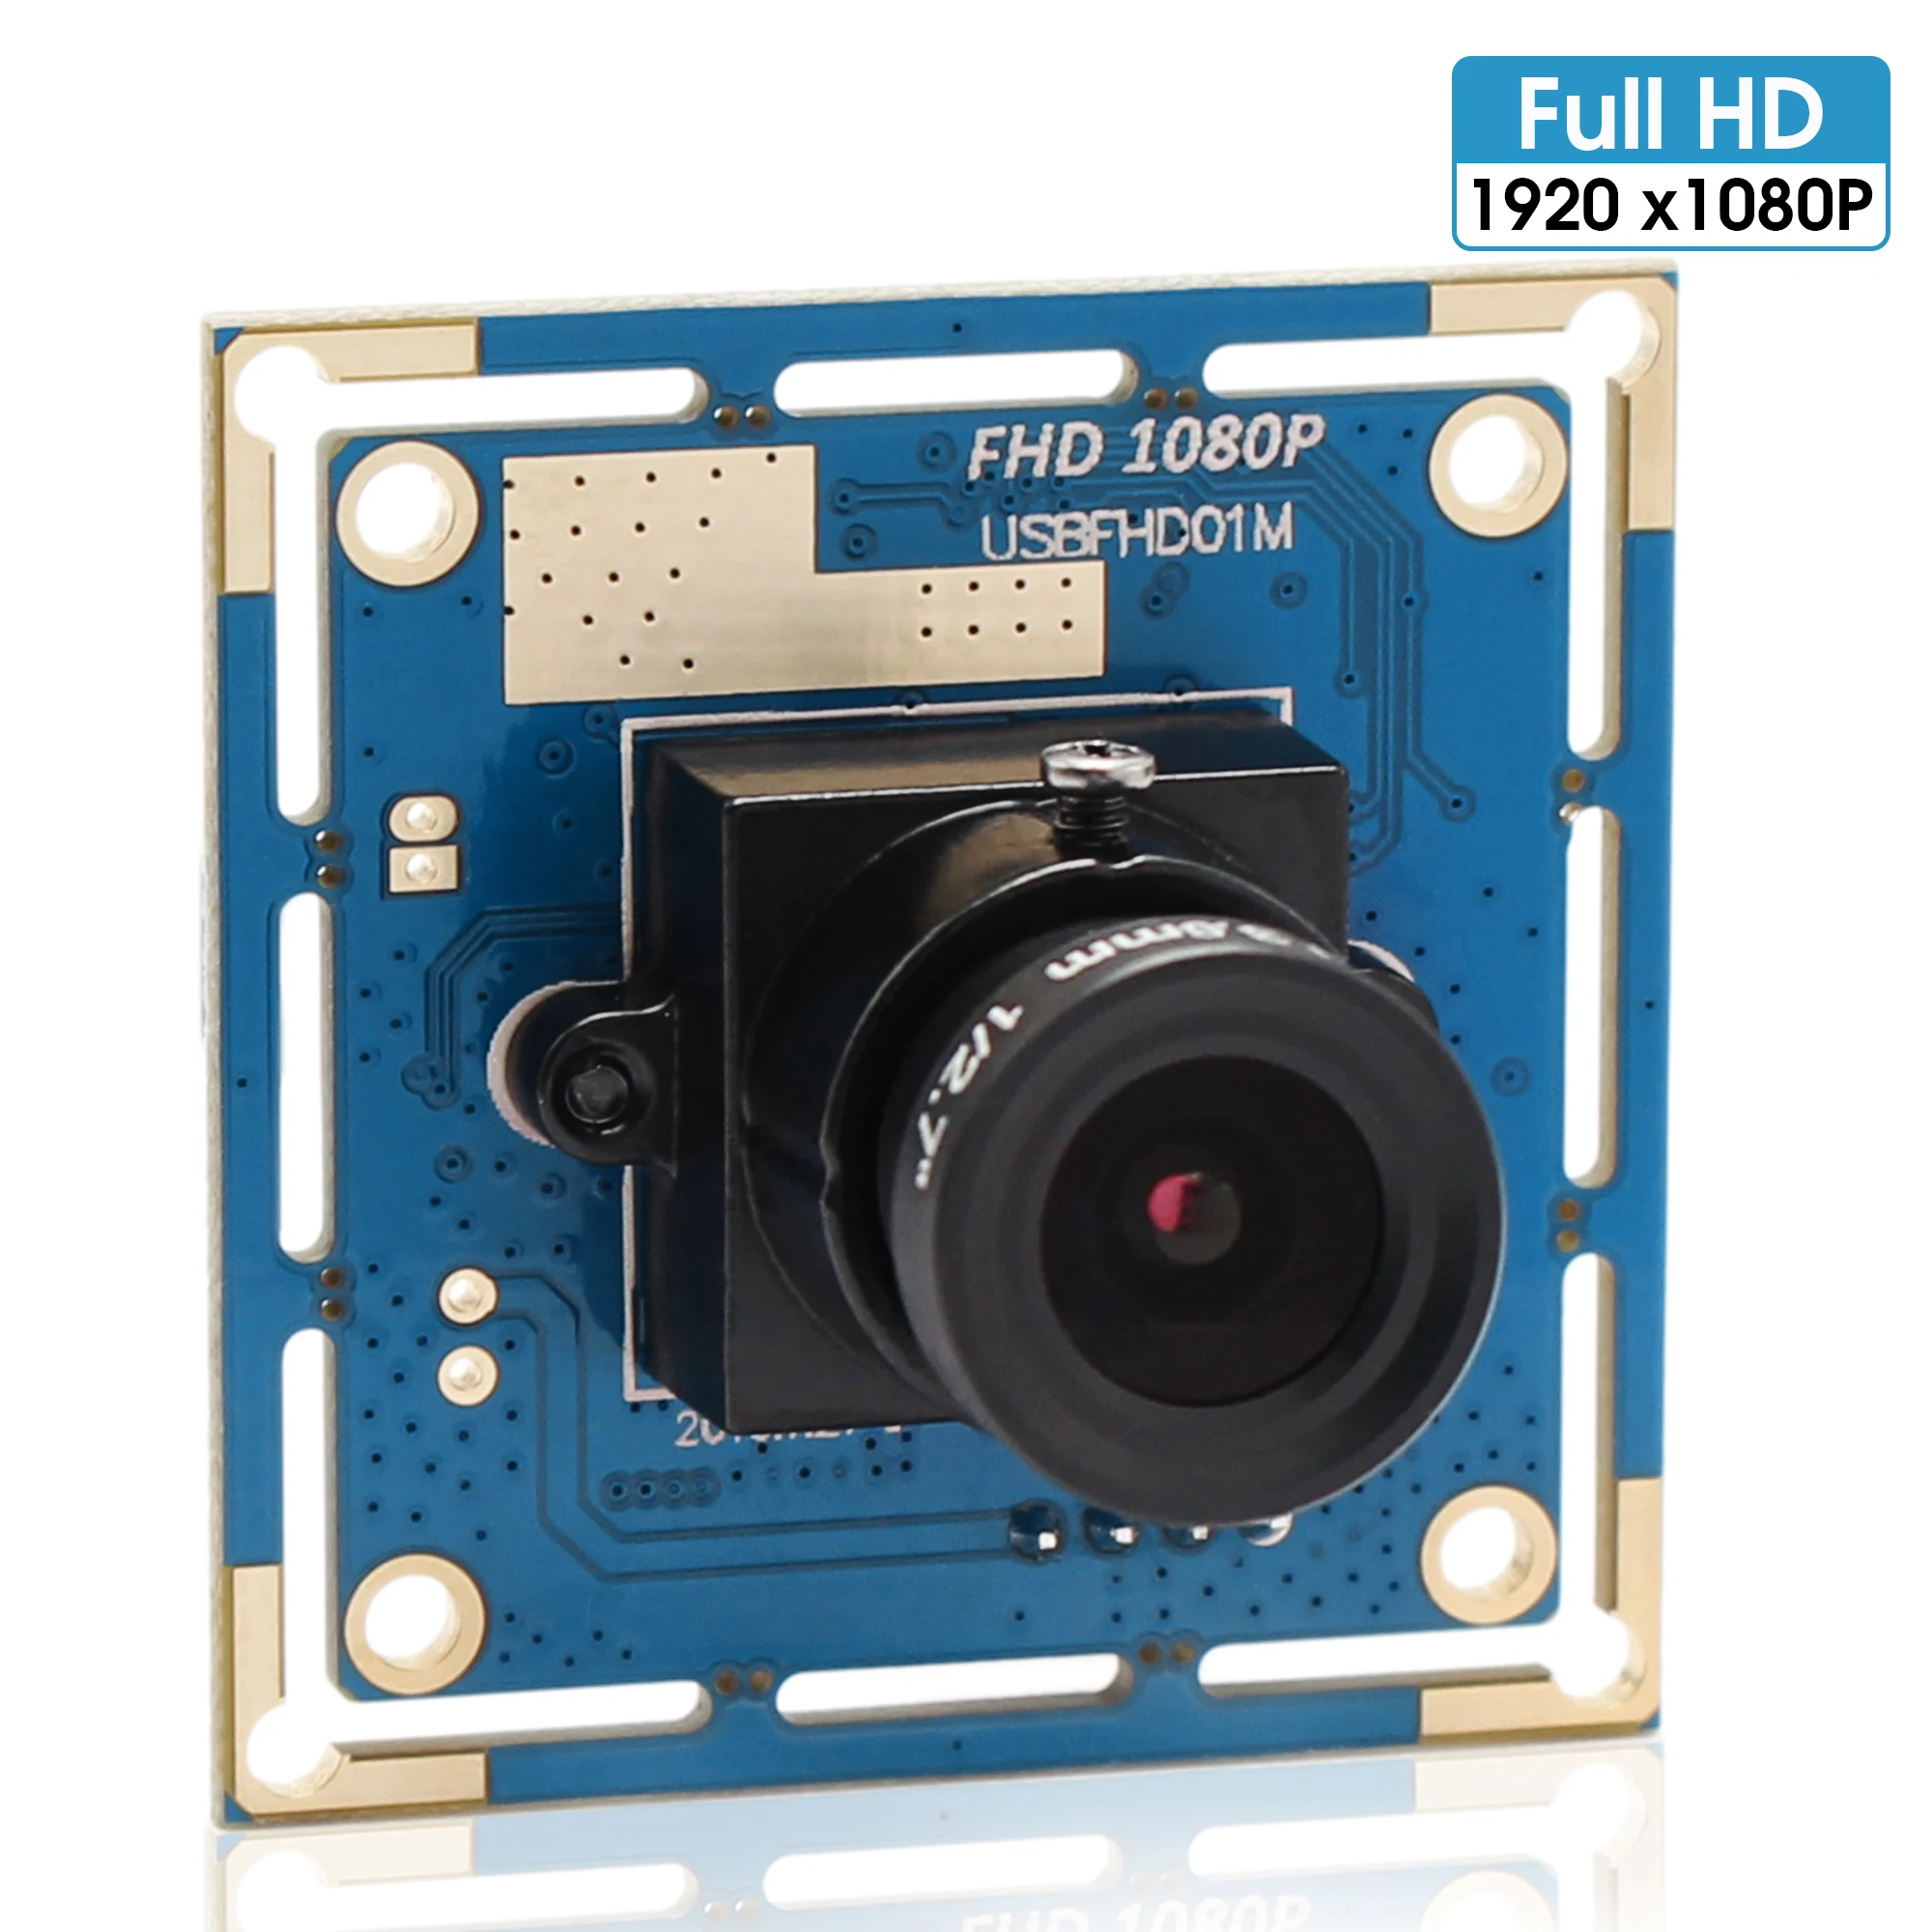 

1080p Full Hd MJPEG 30fps/60fps/100fps Высокоскоростная CMOS OV2710 широкоугольная мини-камера видеонаблюдения UVC OTG OEM веб-камера Usb модуль камеры